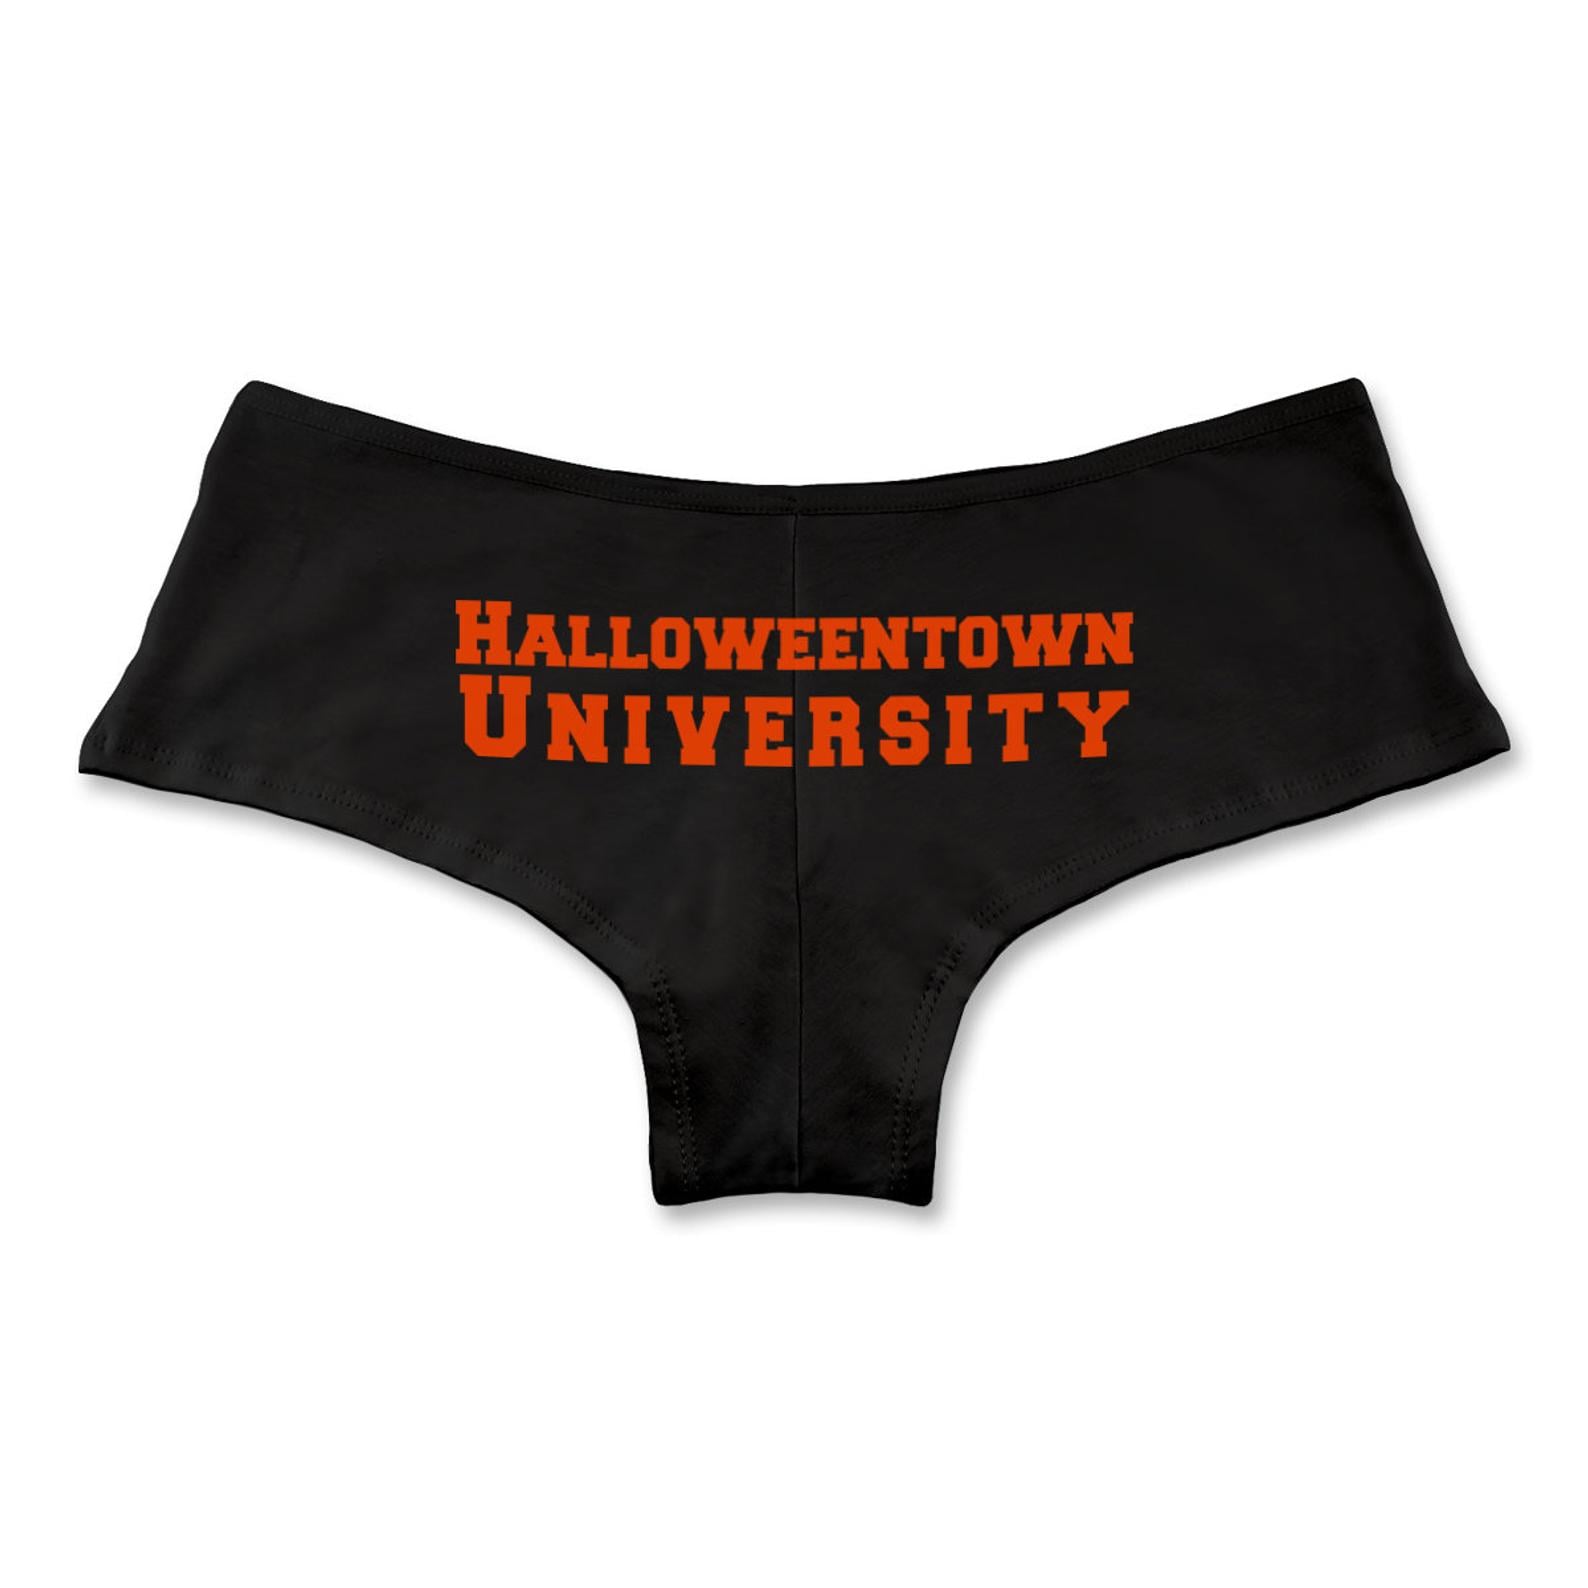 Halloweentown University Boyshort Underwear